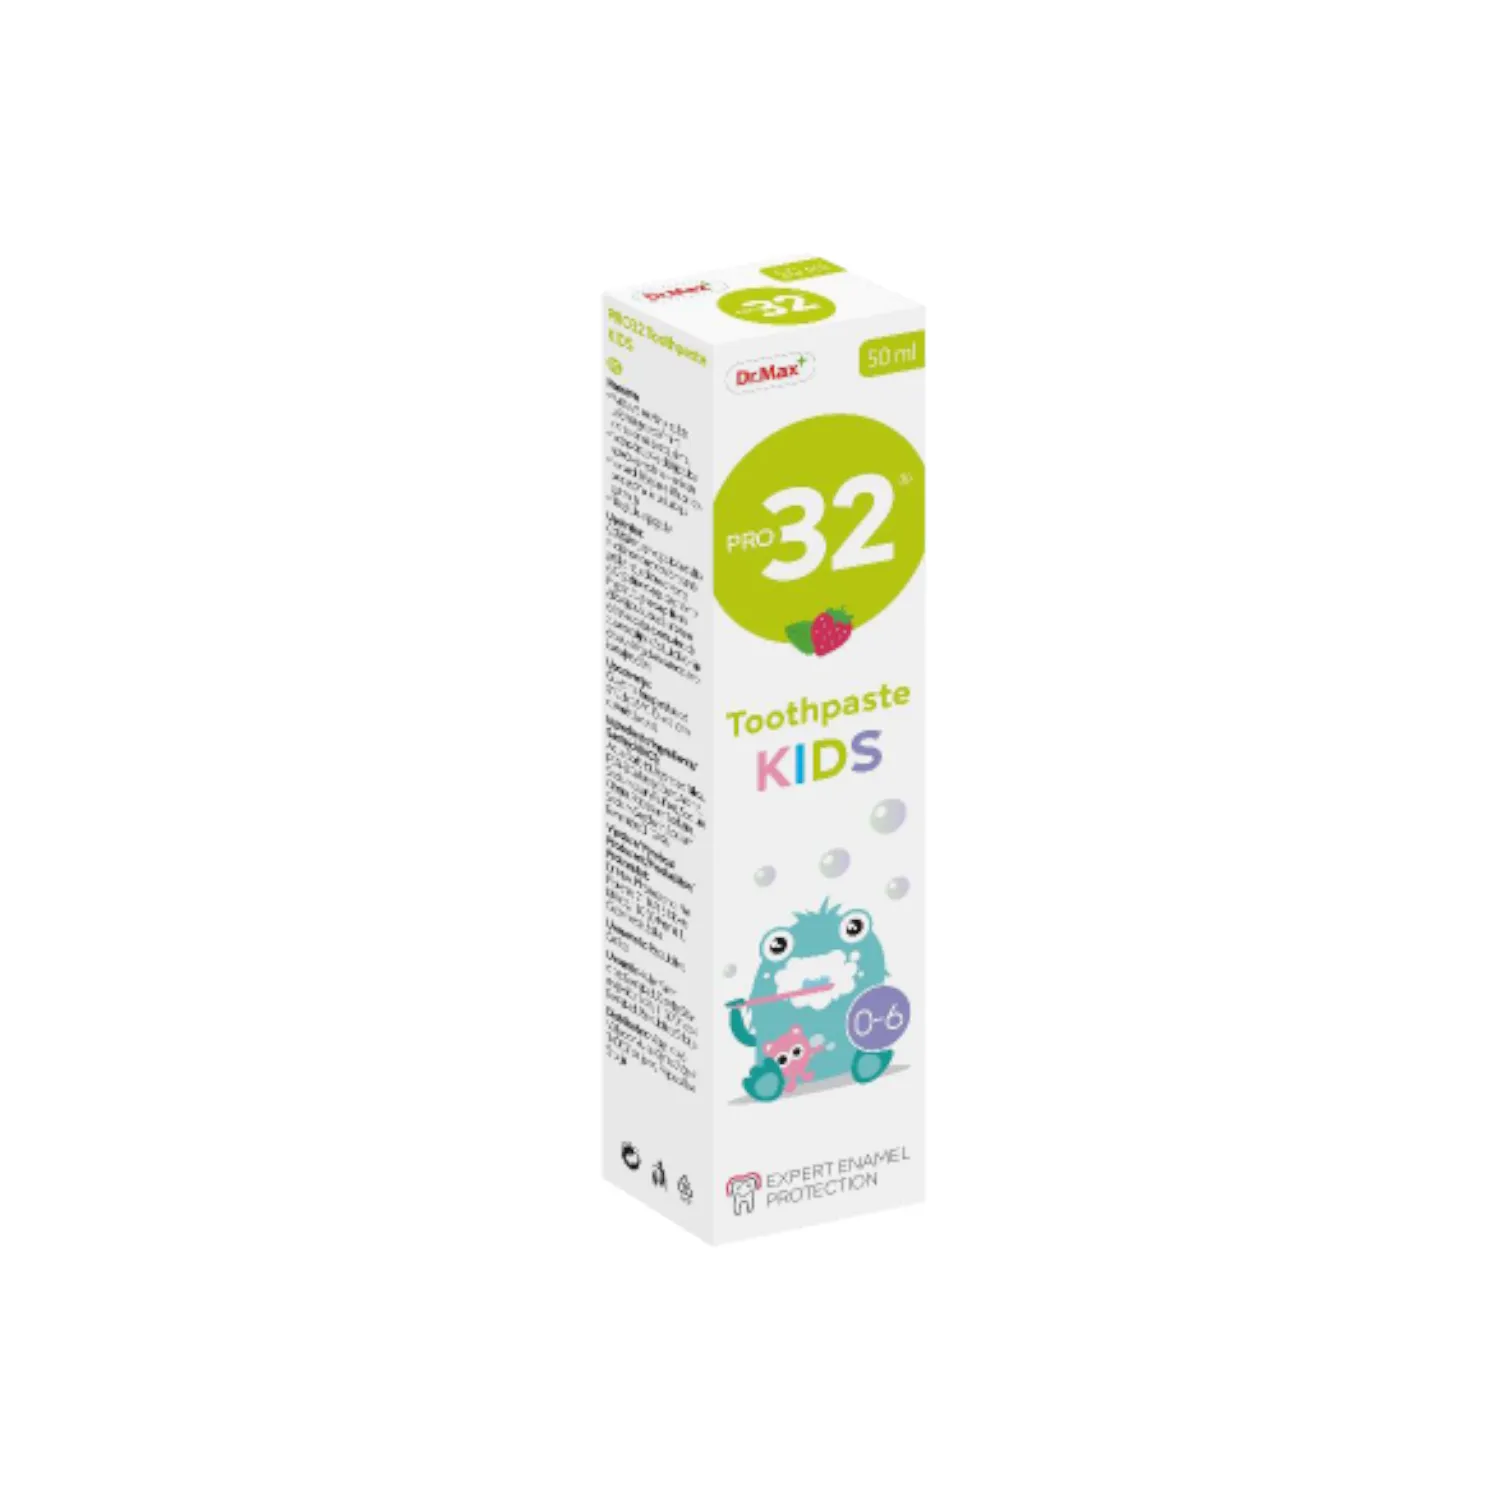 Pro32 Toothpaste Kids Dr.Max, pasta do zębów dla dzieci, 50 ml